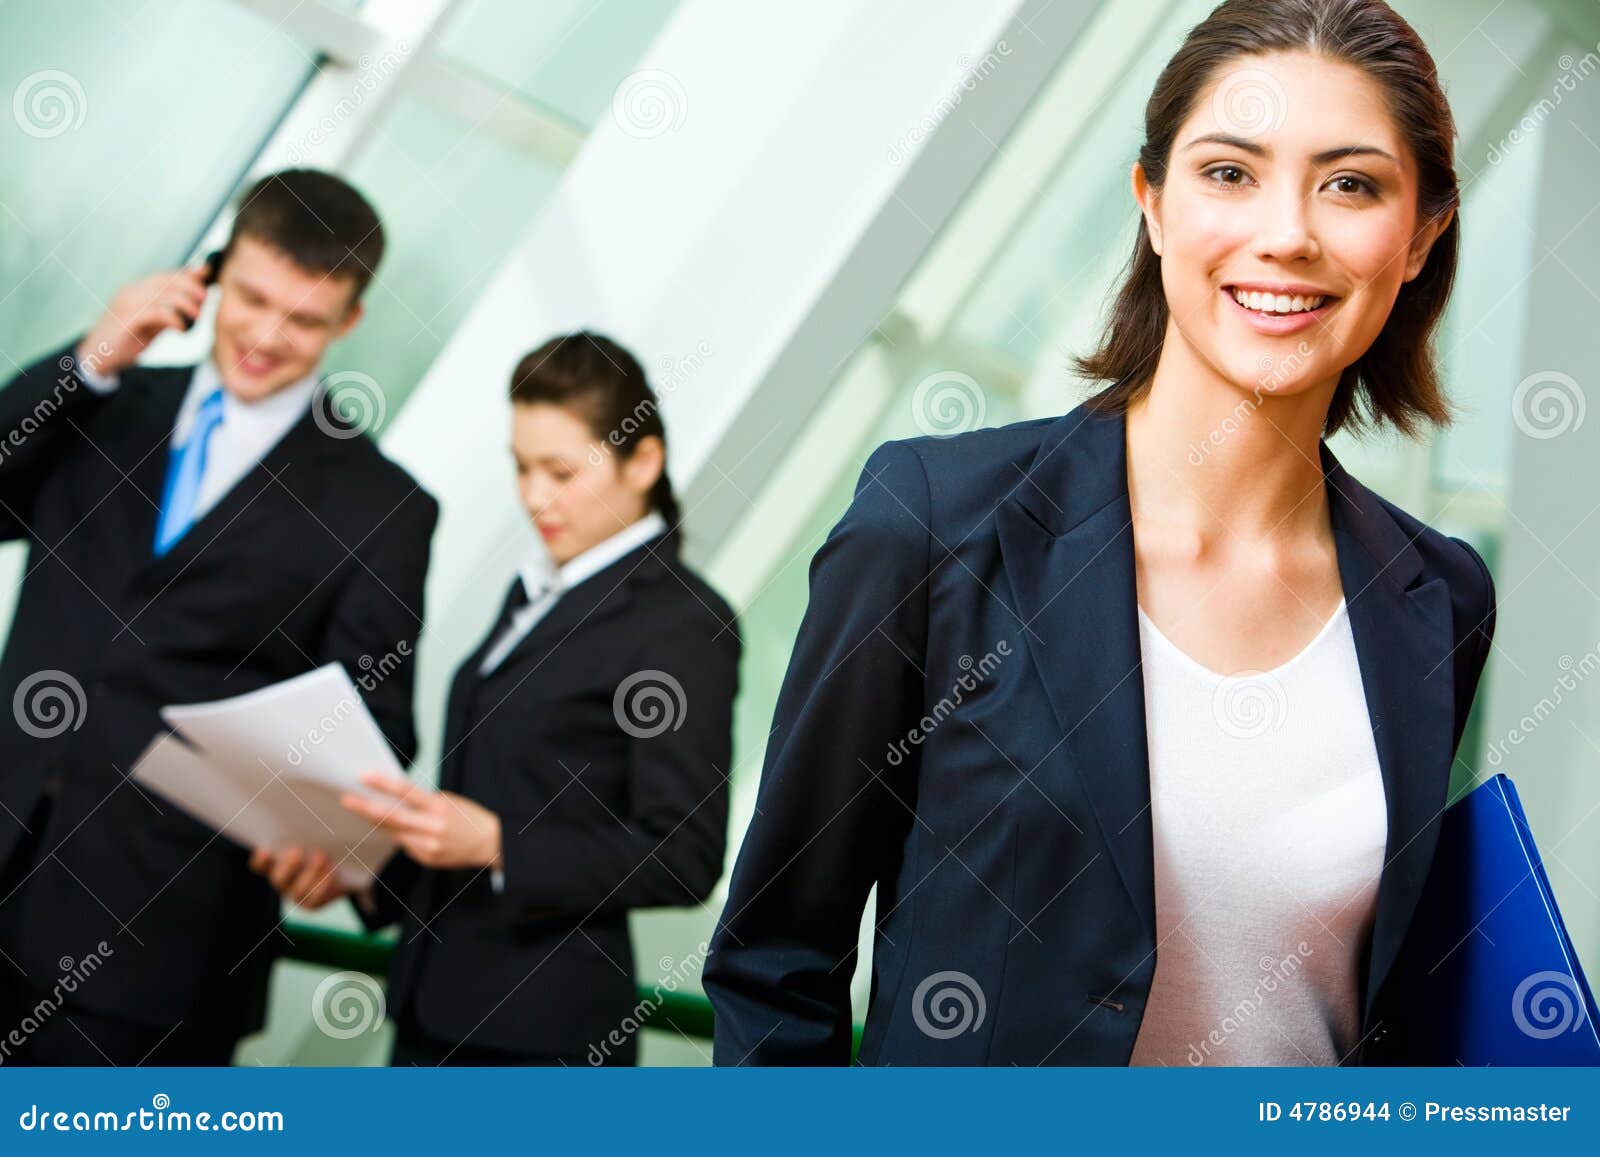 Retrato del empleado alegre en el juego que sostiene la carpeta en el fondo de hombres de negocios